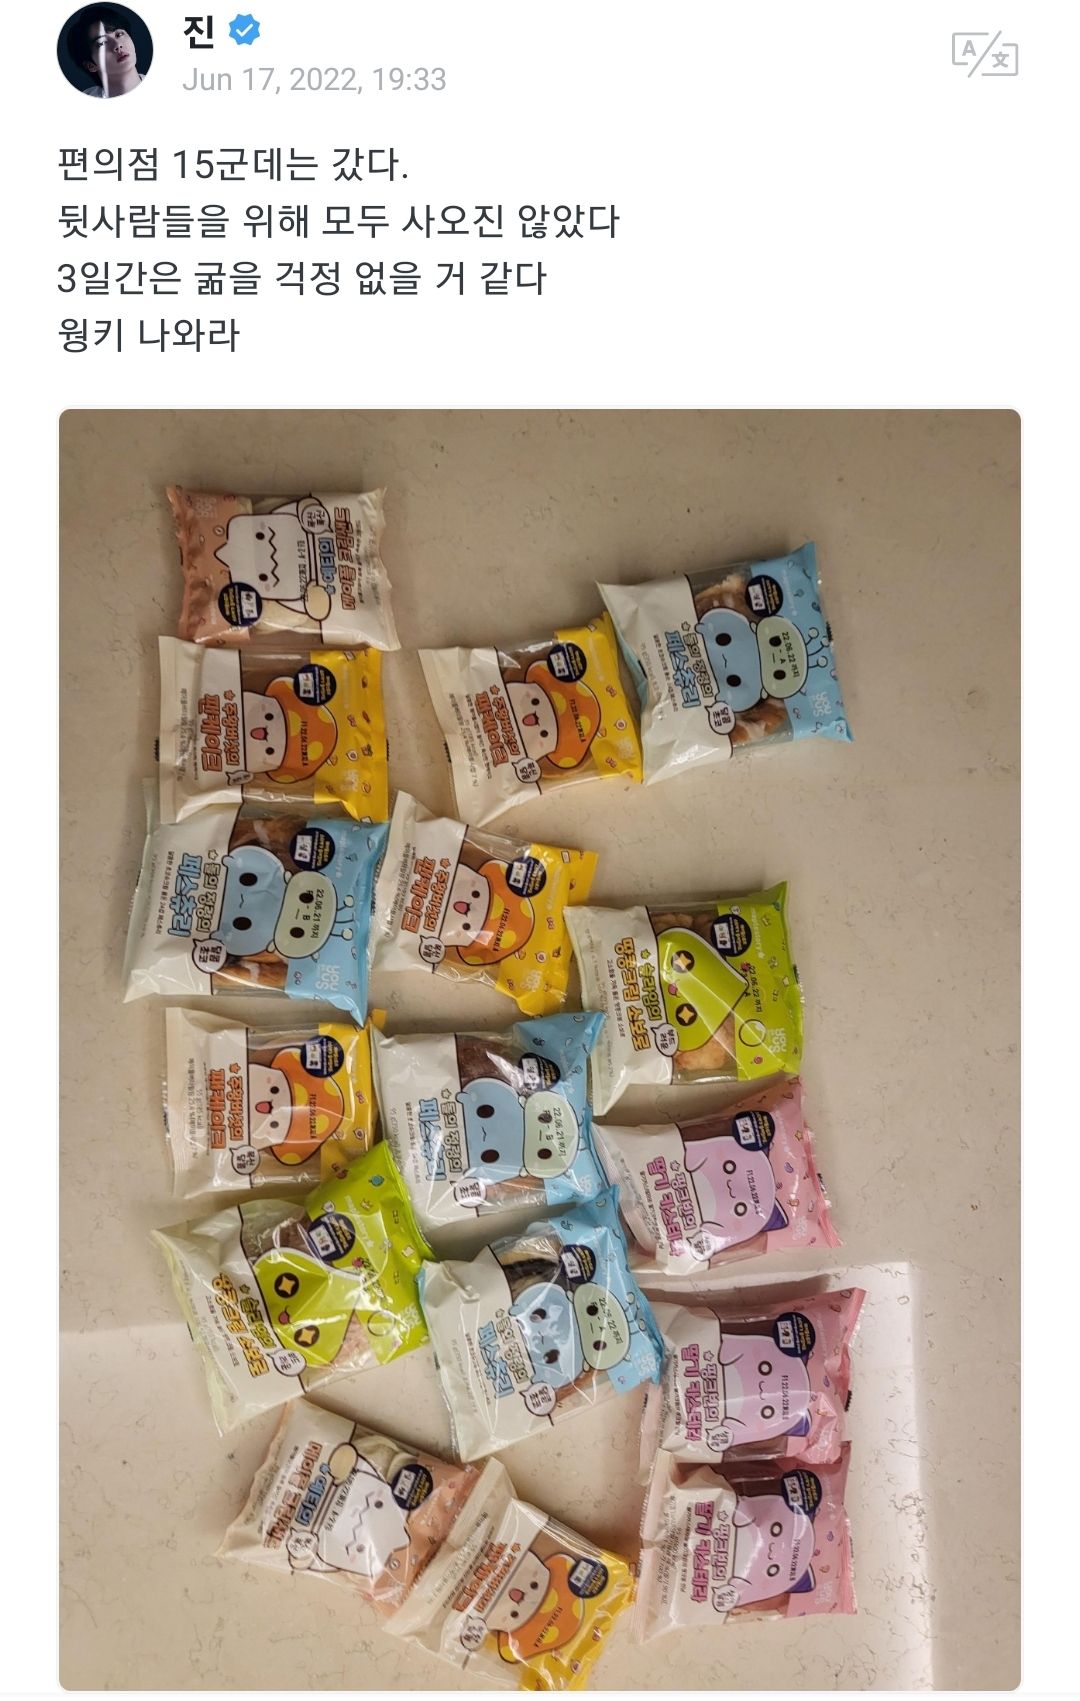 Postingan Jin BTS di Weverse tentang menjelajahi 15 toko serba ada untuk berburu roti langka ini. 